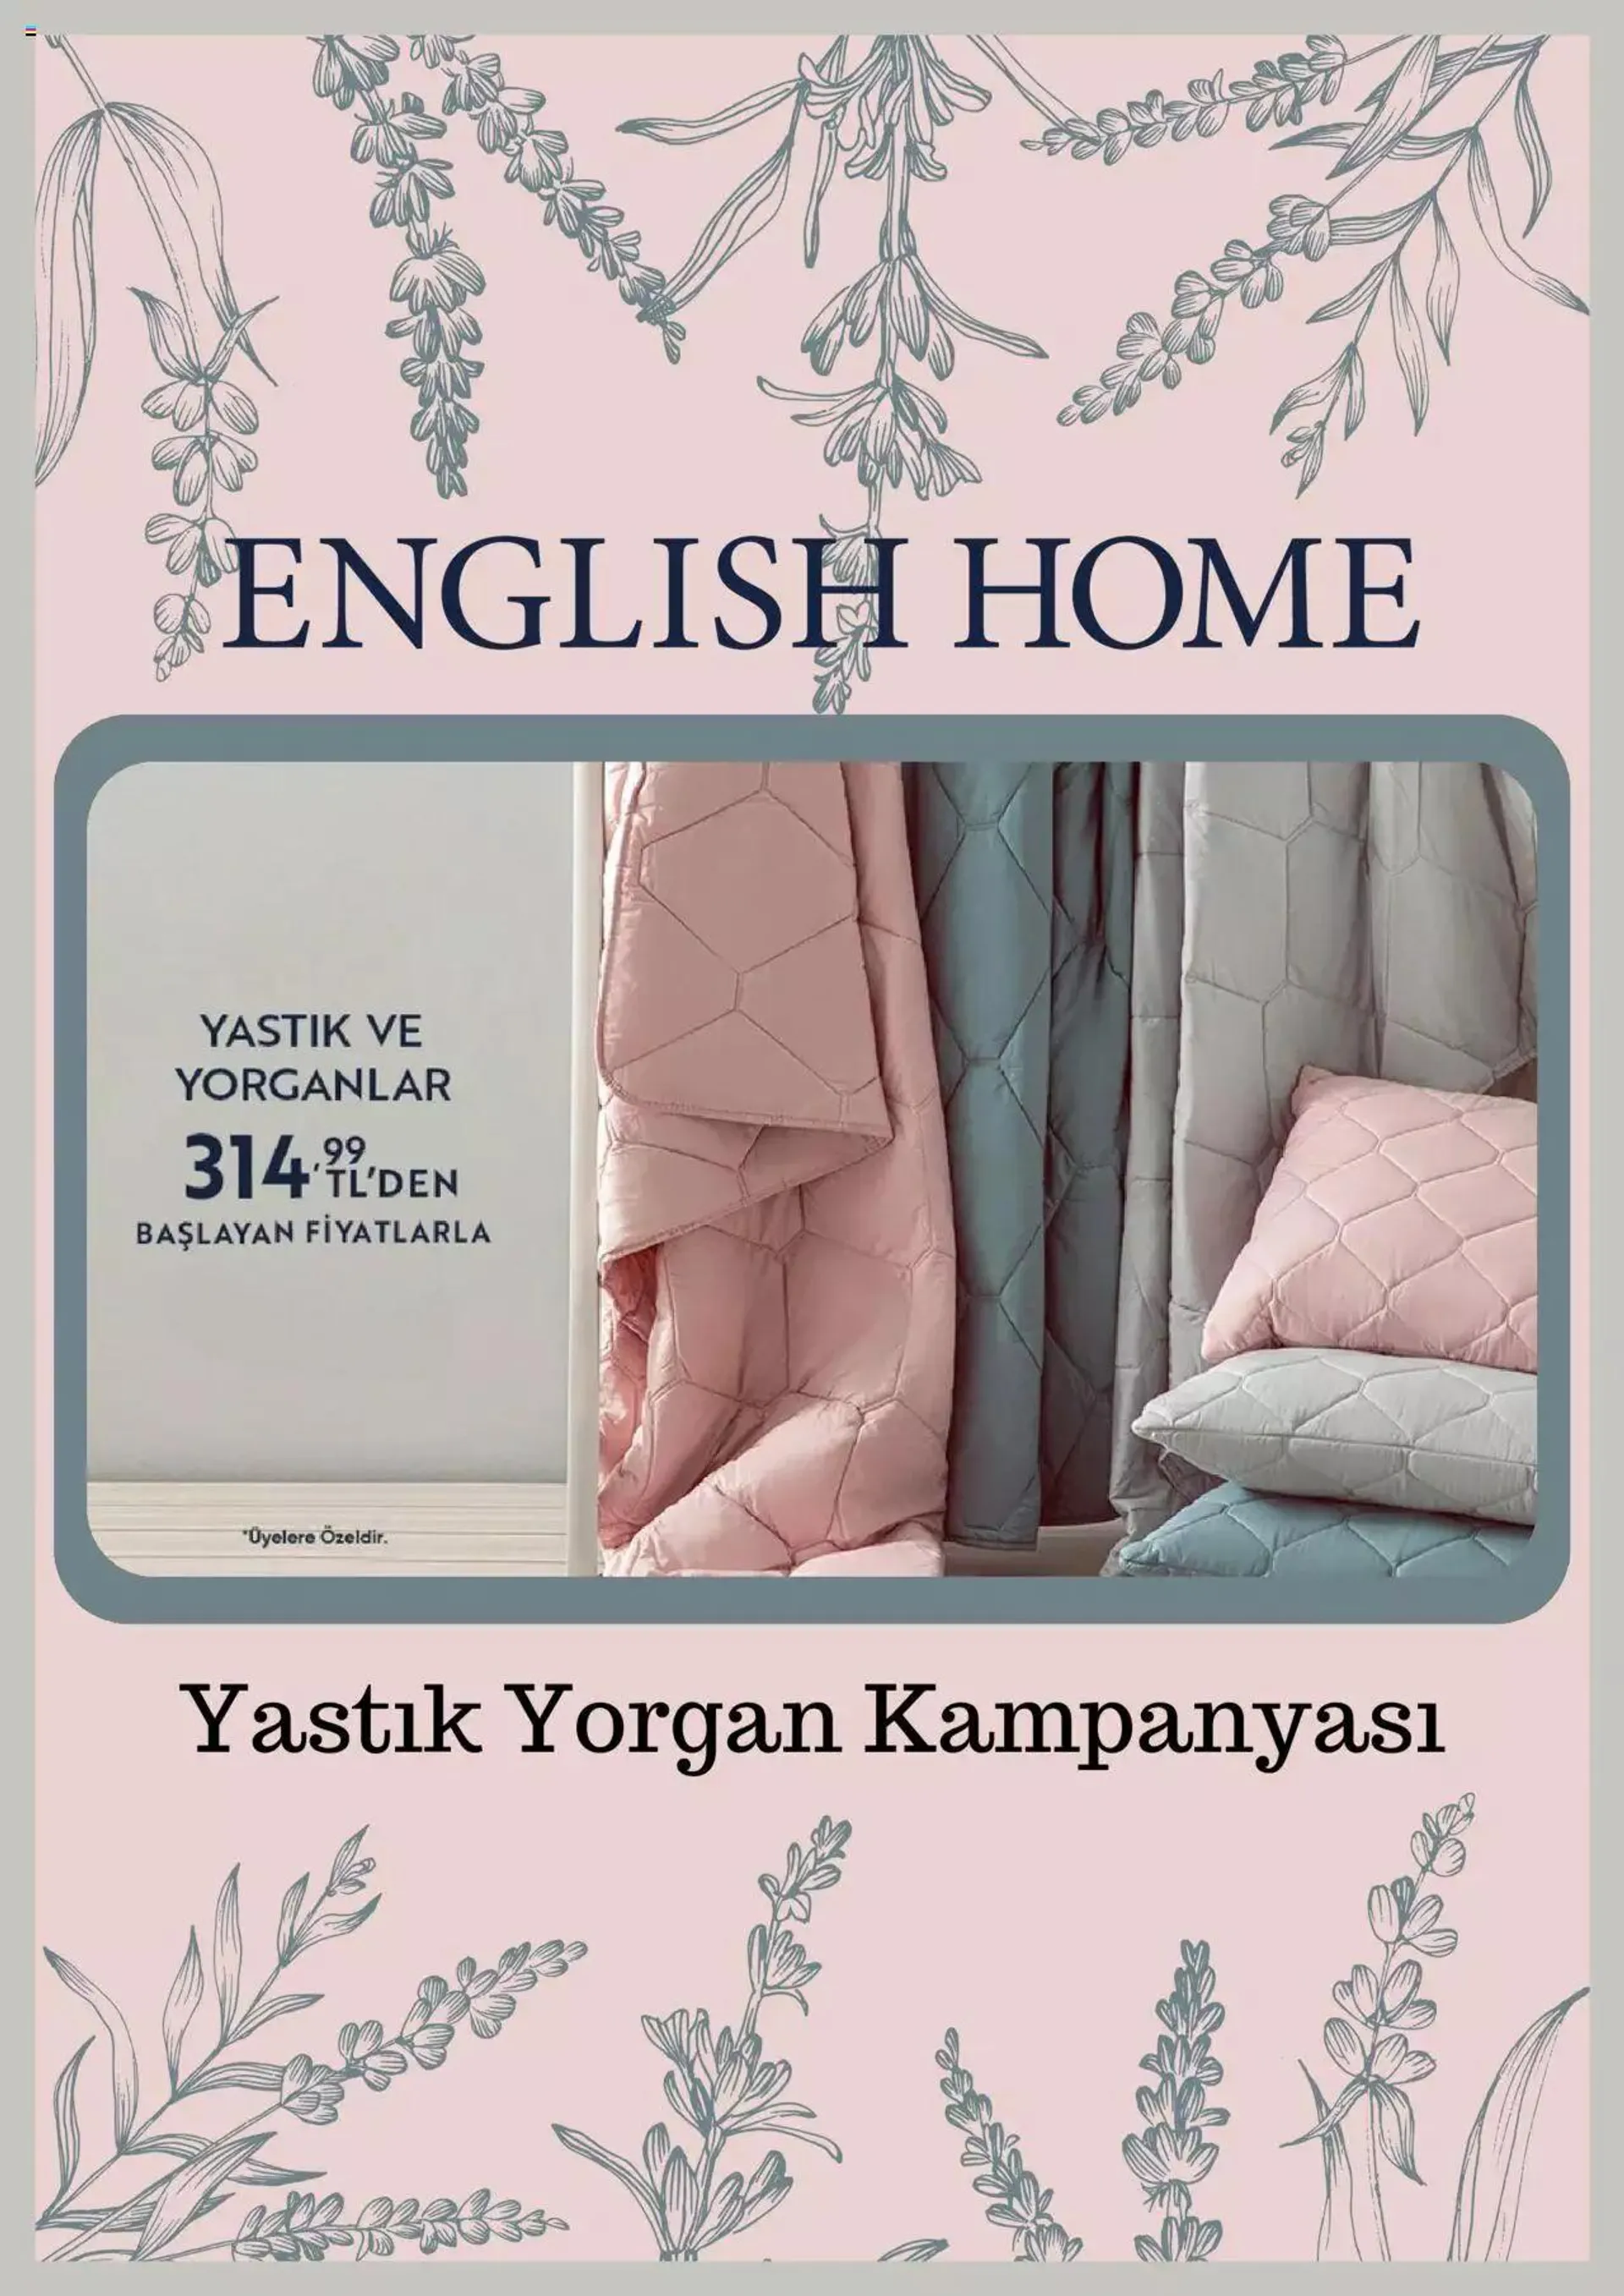 English Home Katalog